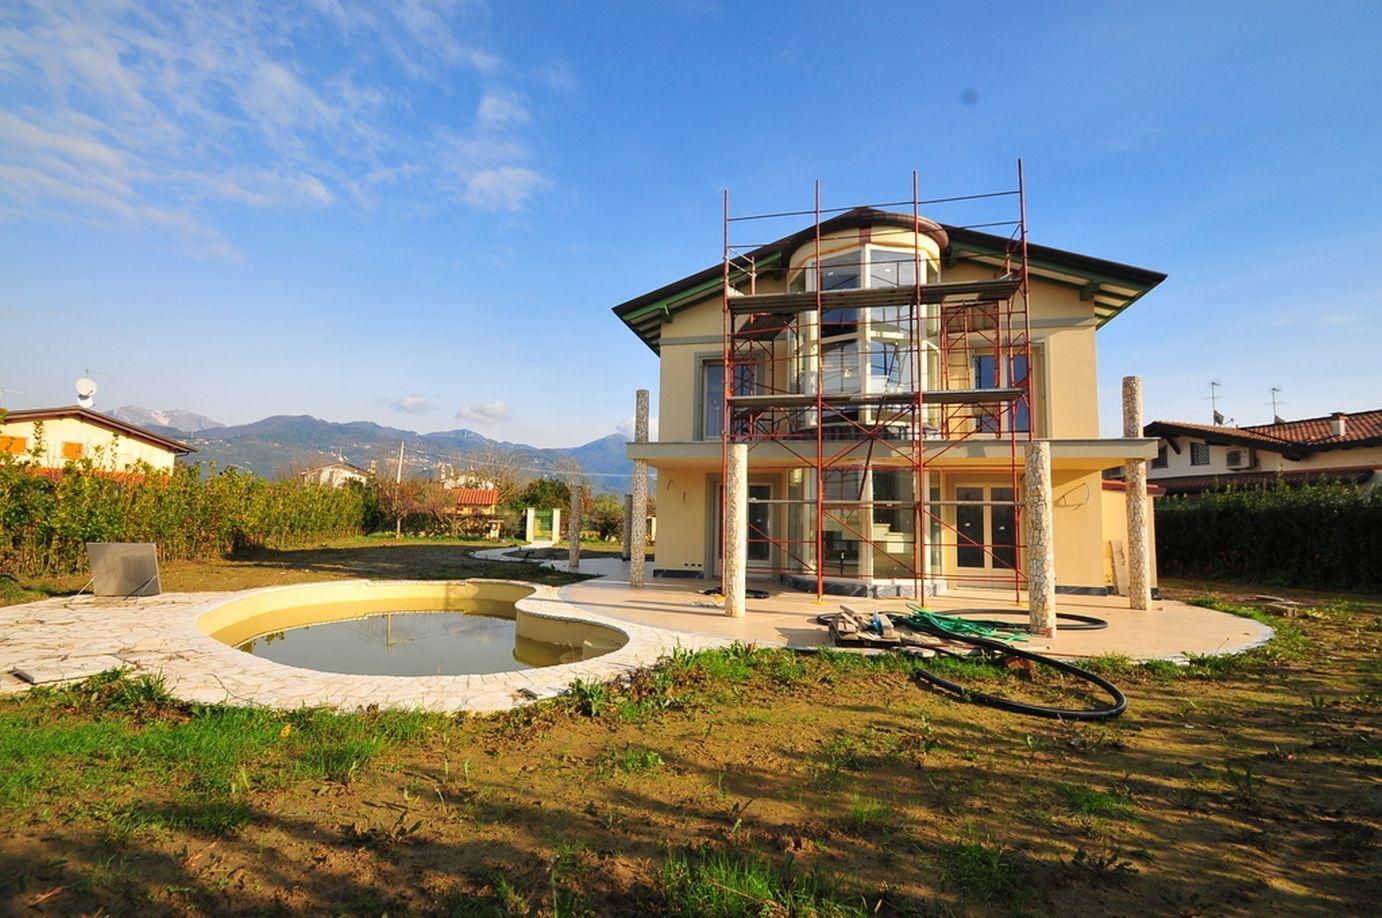 Villa in vendita - Tonfano, Pietrasanta